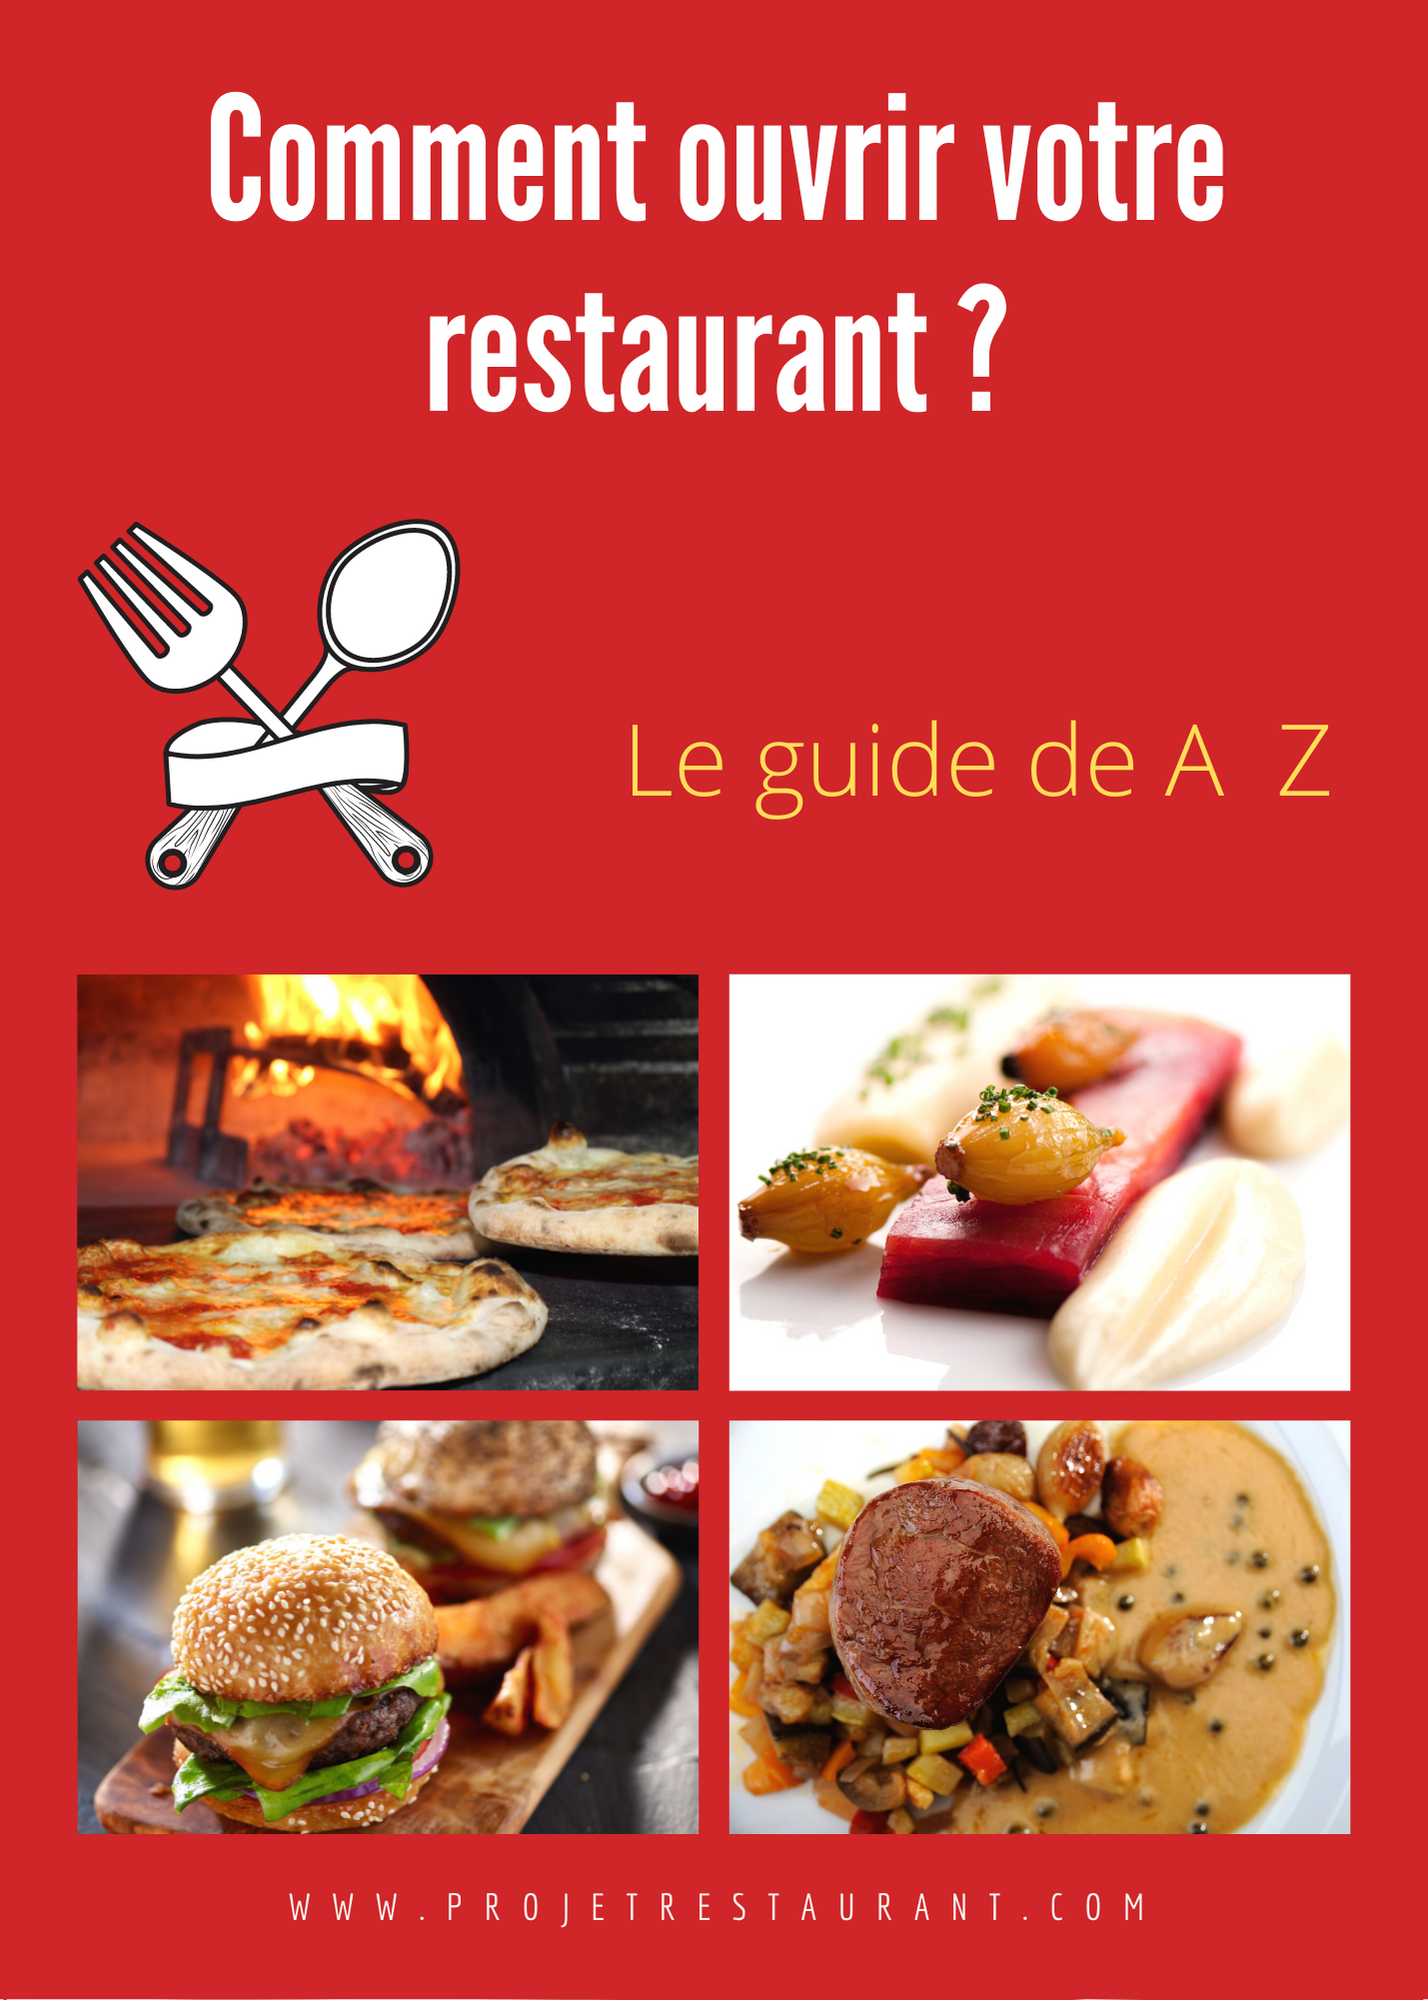 Dictionnaire de Cuisine et Gastronomie - Couvert